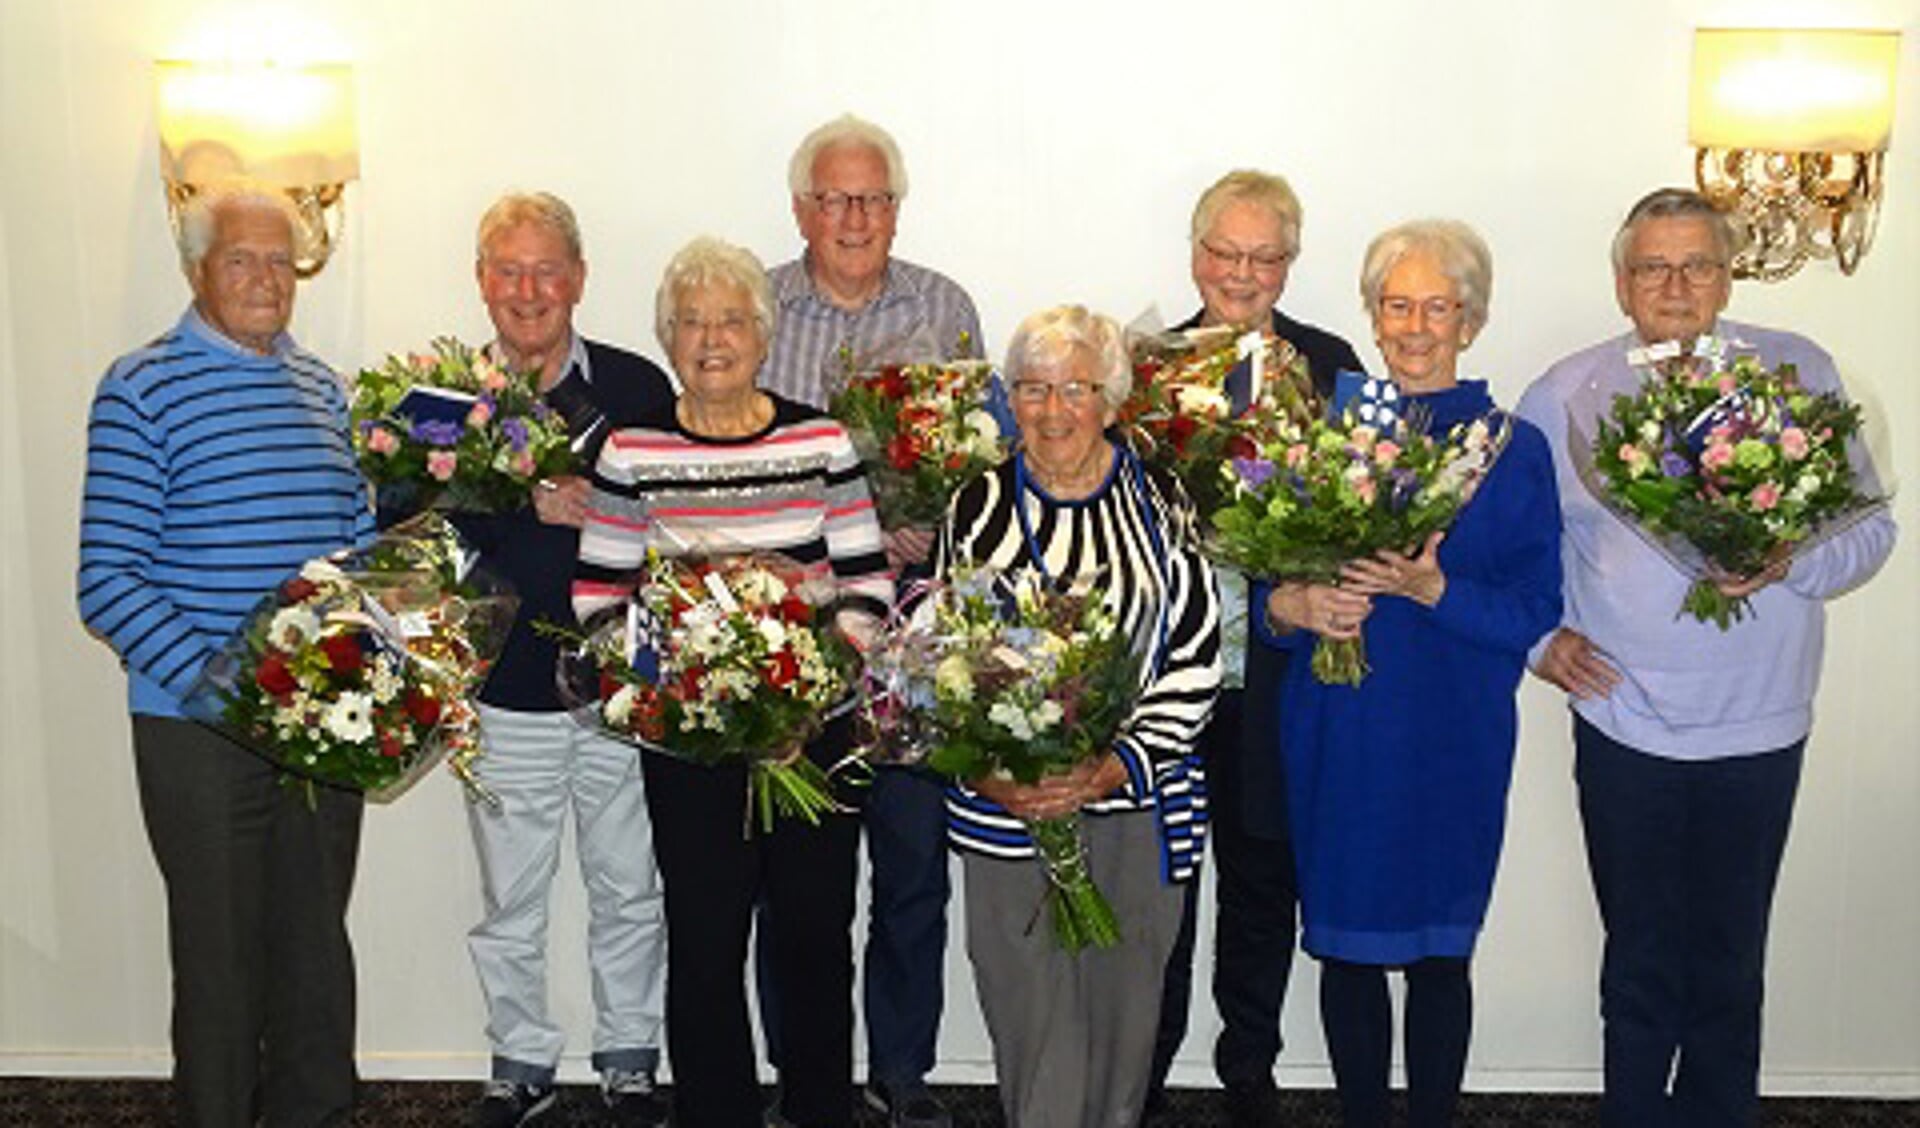 De jubilarissen kregen bloemen van de unie van Vrijwilligers.